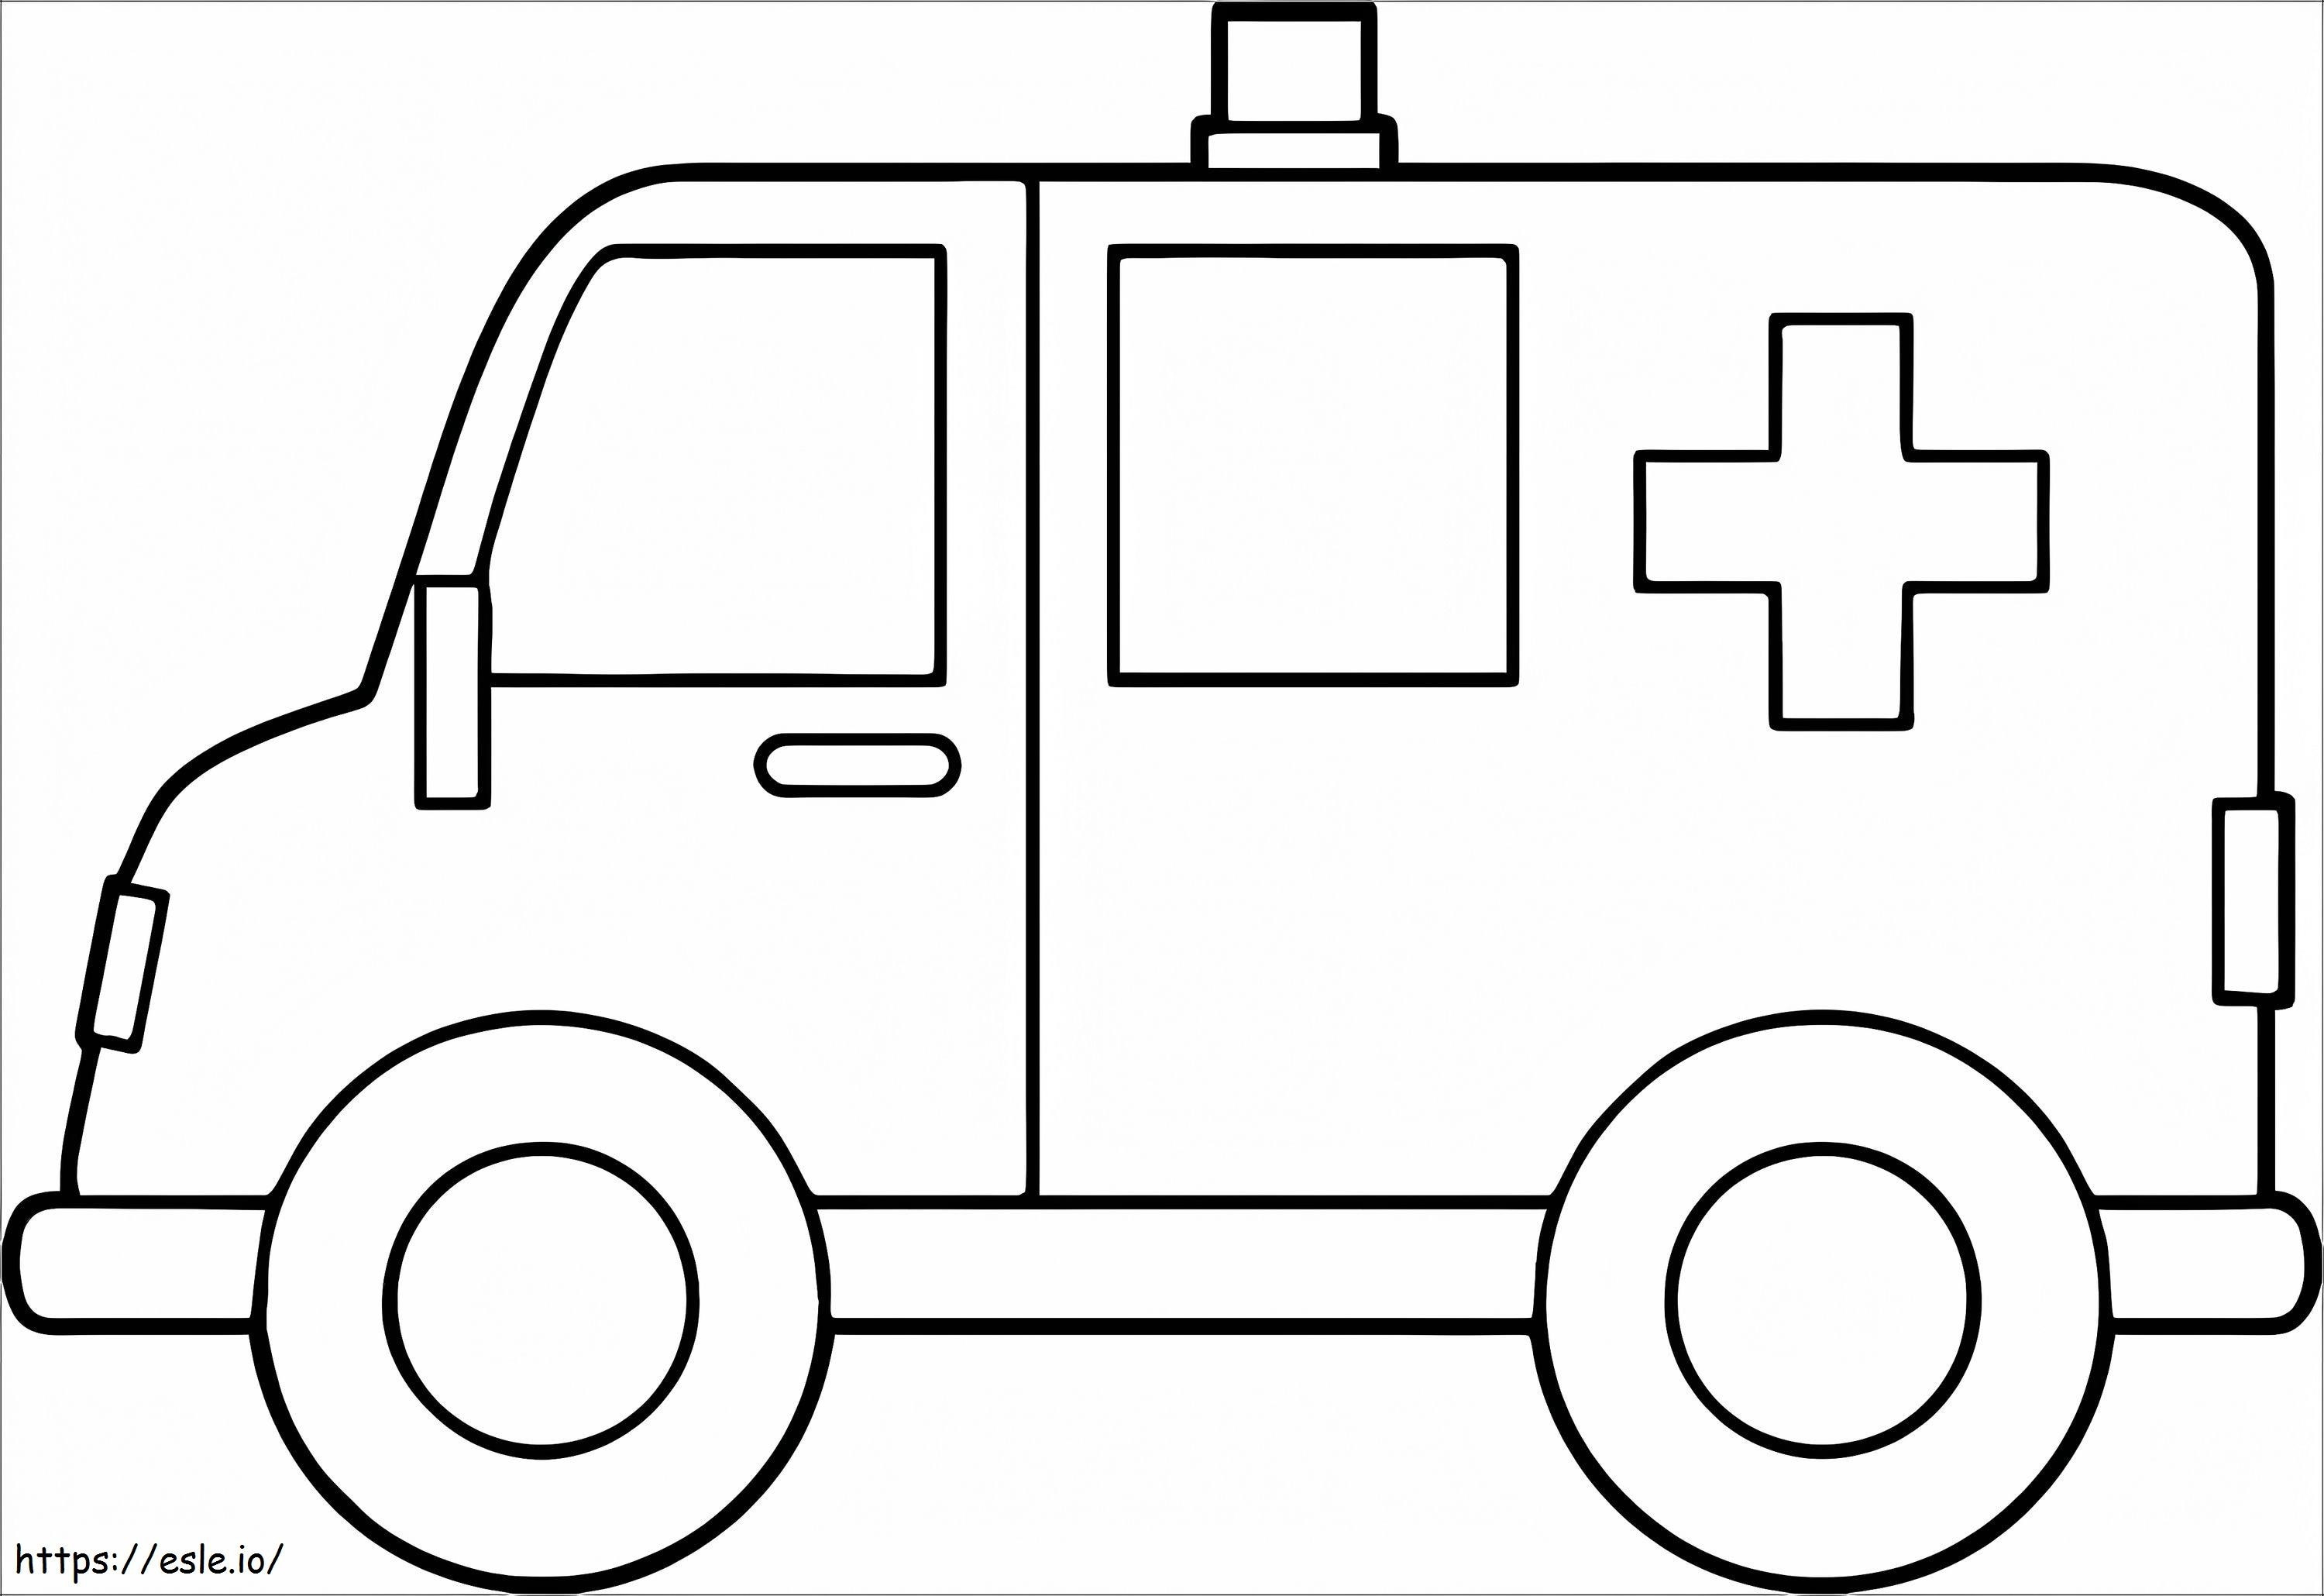 Ambulanza 19 1024X703 da colorare